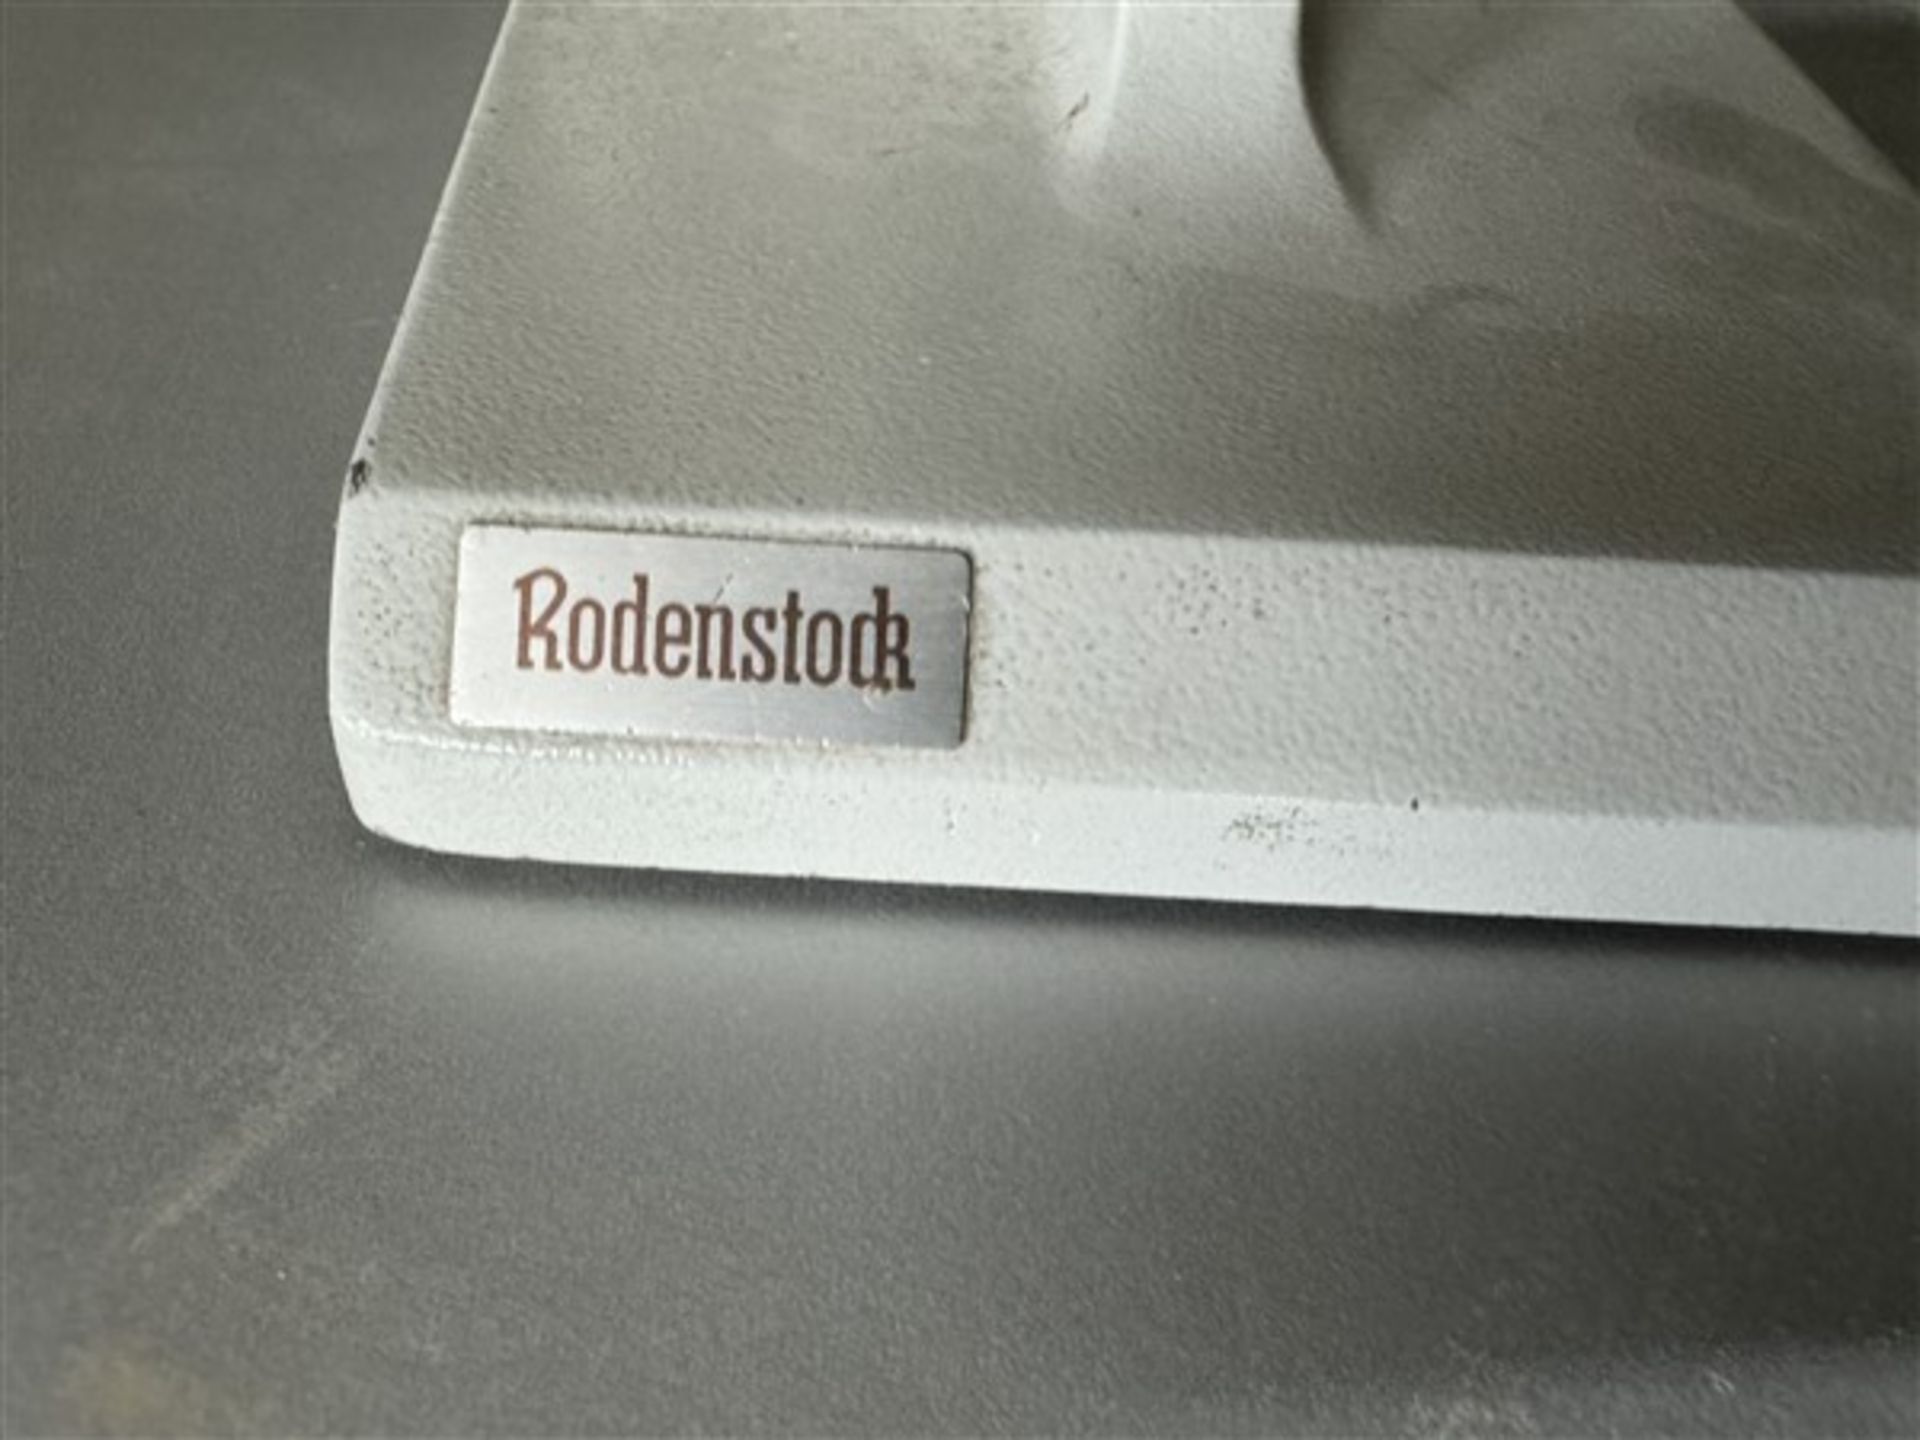 Roderistock Focimeter monocular, model 29092/001, 240v and Unbranded dual buffer, 240v - Bild 2 aus 4